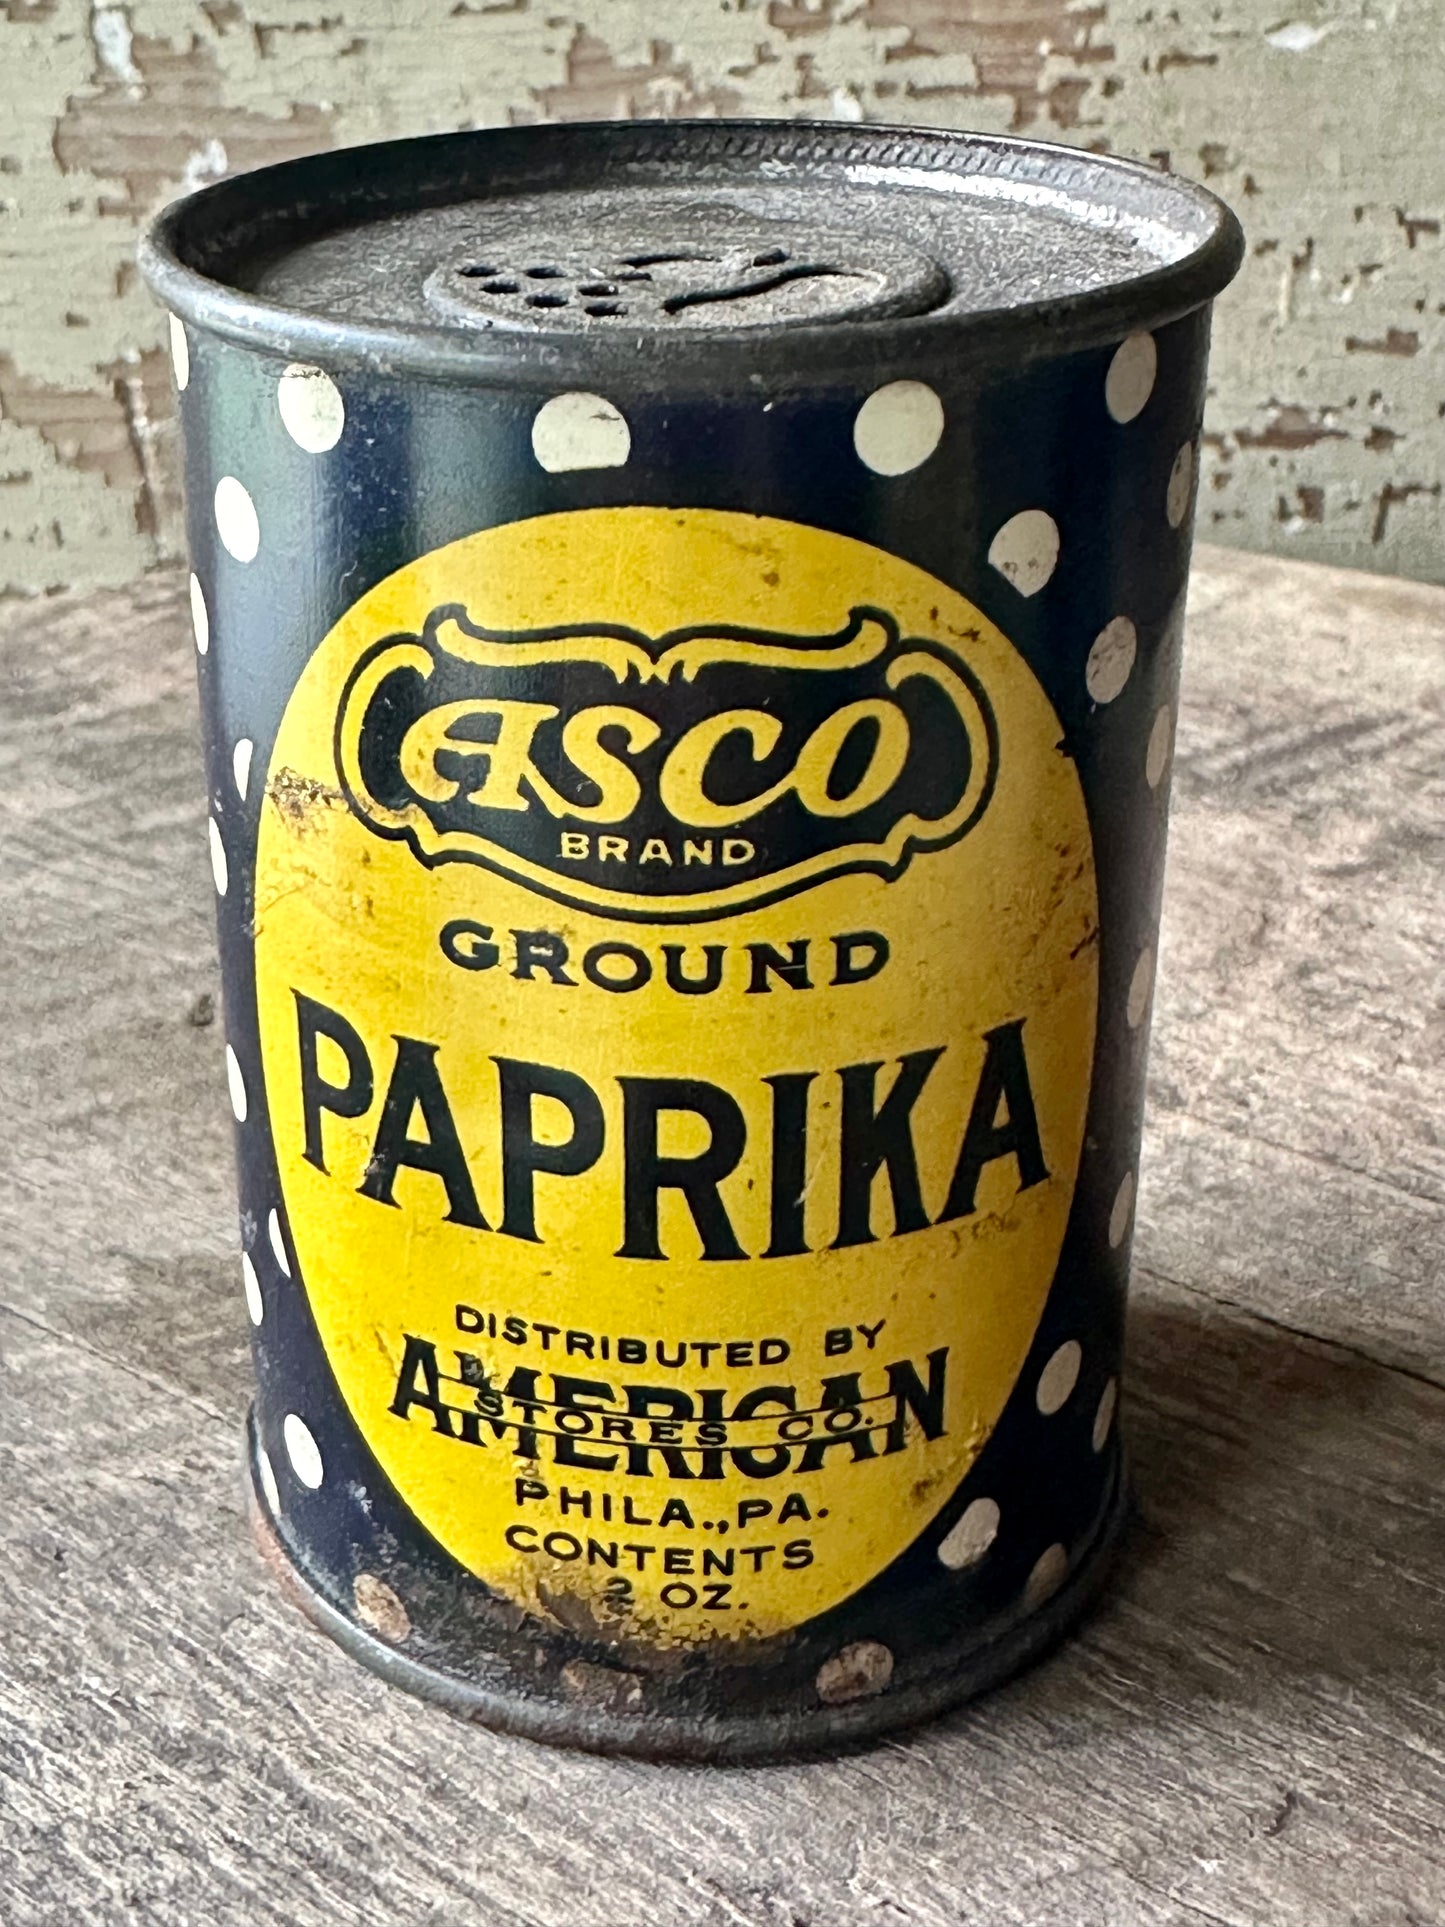 Asco Brand Ground Paprika Tin